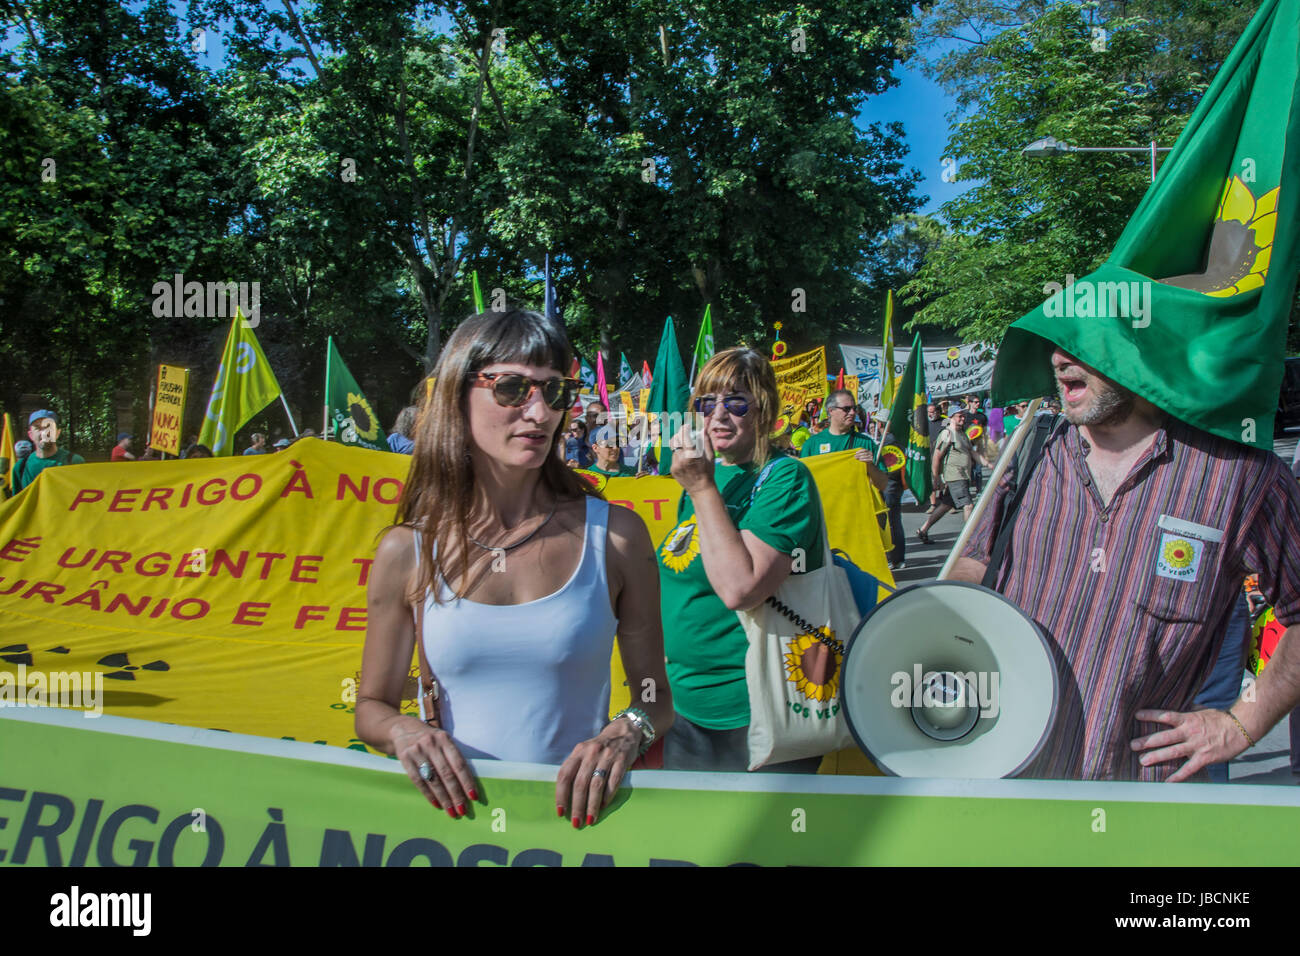 Madrid, Espagne. 10 Juin, 2017. Manifestation contre l'énergie nucléaire sur les rues de Madrid, les gens de l'Espagne et Portugal formulaire démontre dans les rues près de la gare d'Atocha Crédit : Alberto Ramírez Sibaja/Alamy Live News Banque D'Images